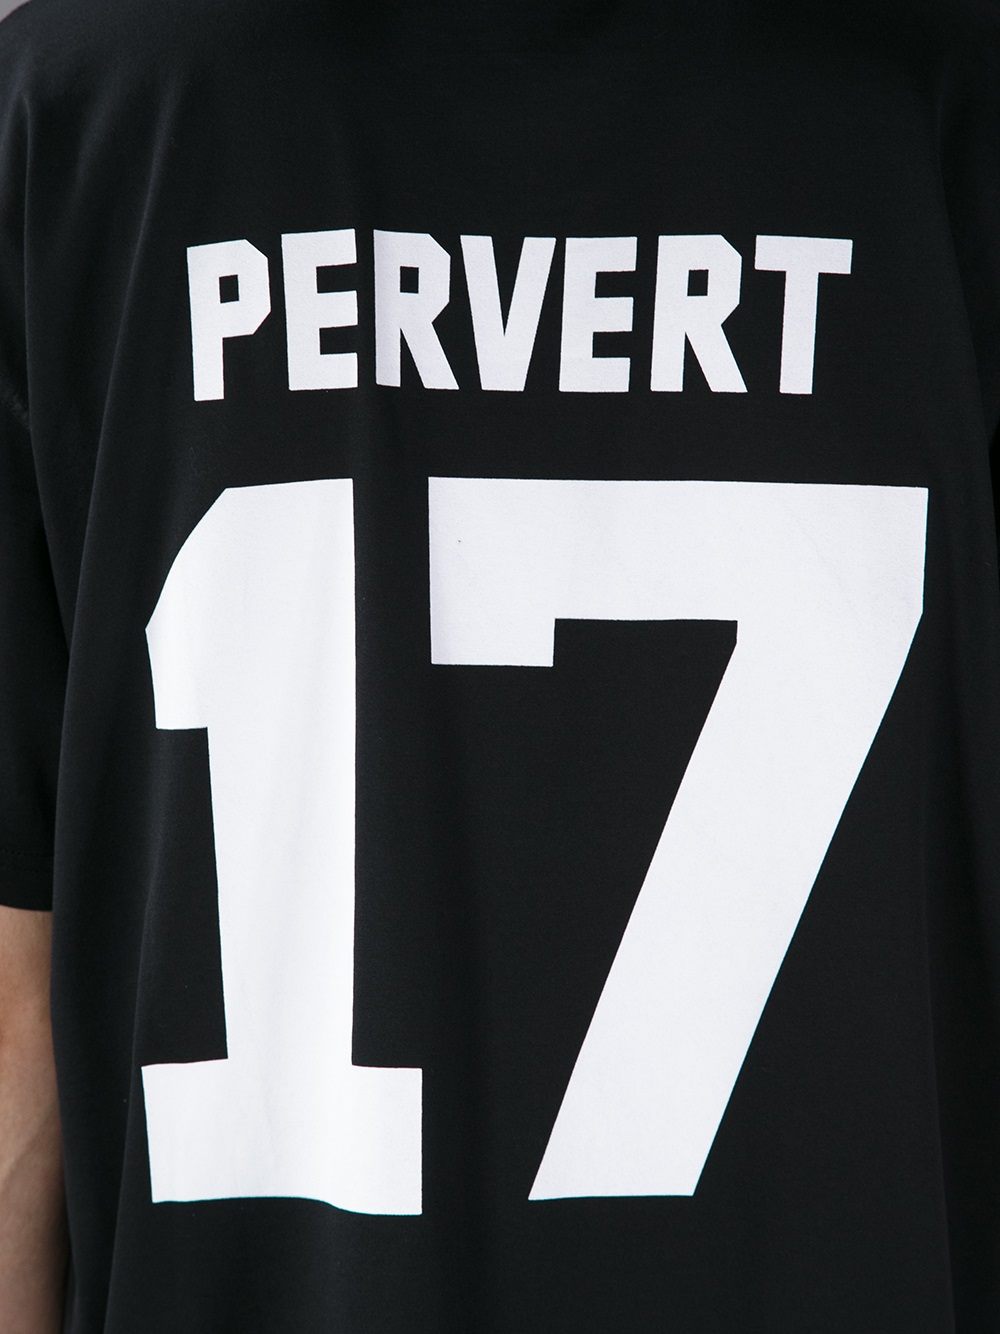 正規 Givenchy ジバンシィ PERVERT Tシャツ